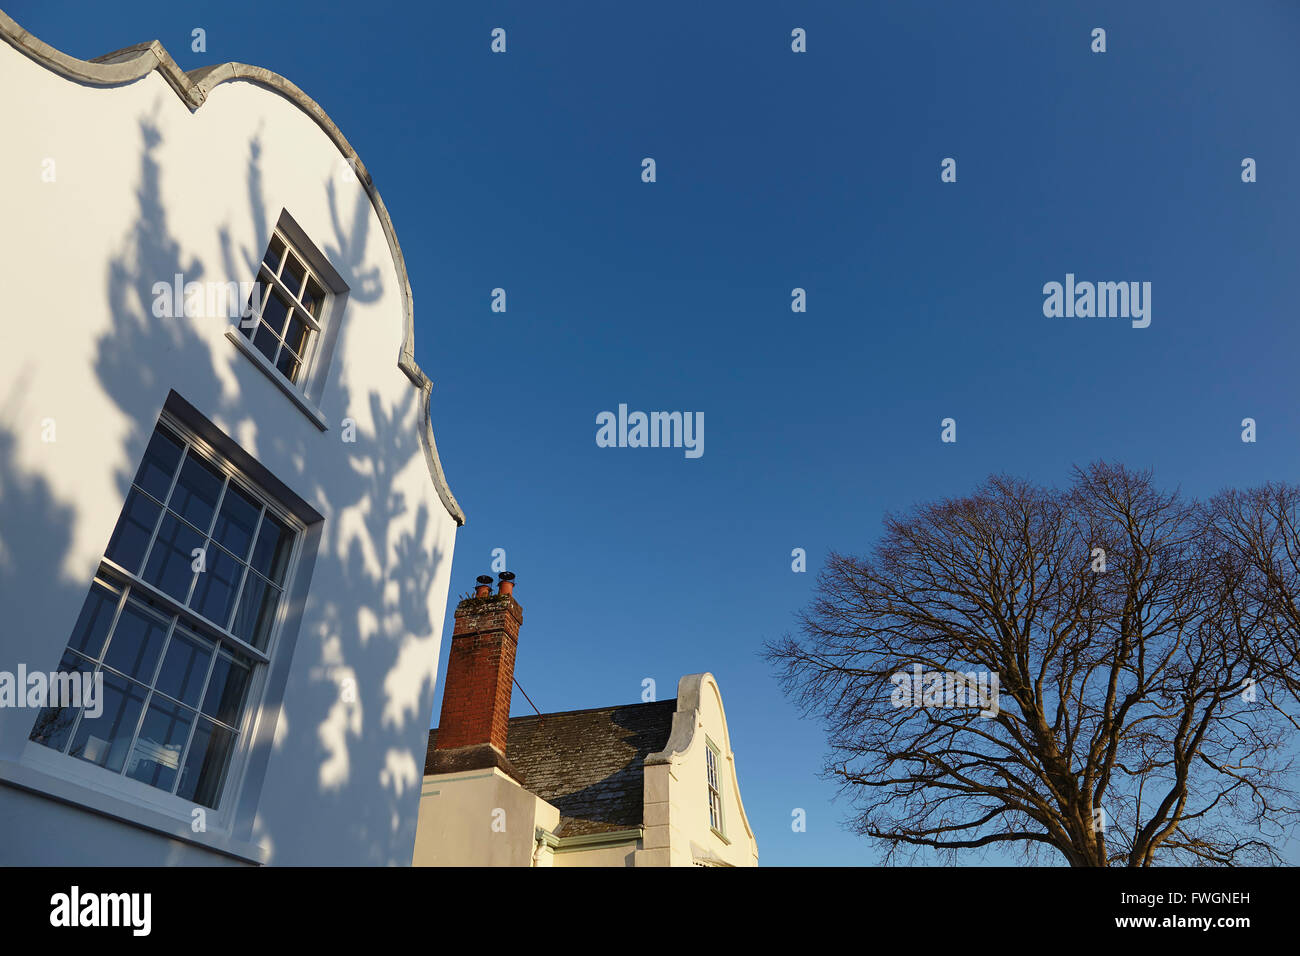 Historischen 17. Jahrhundert niederländische Architektur in Topsham, in der Nähe von Exeter, Devon, England, Vereinigtes Königreich, Europa Stockfoto